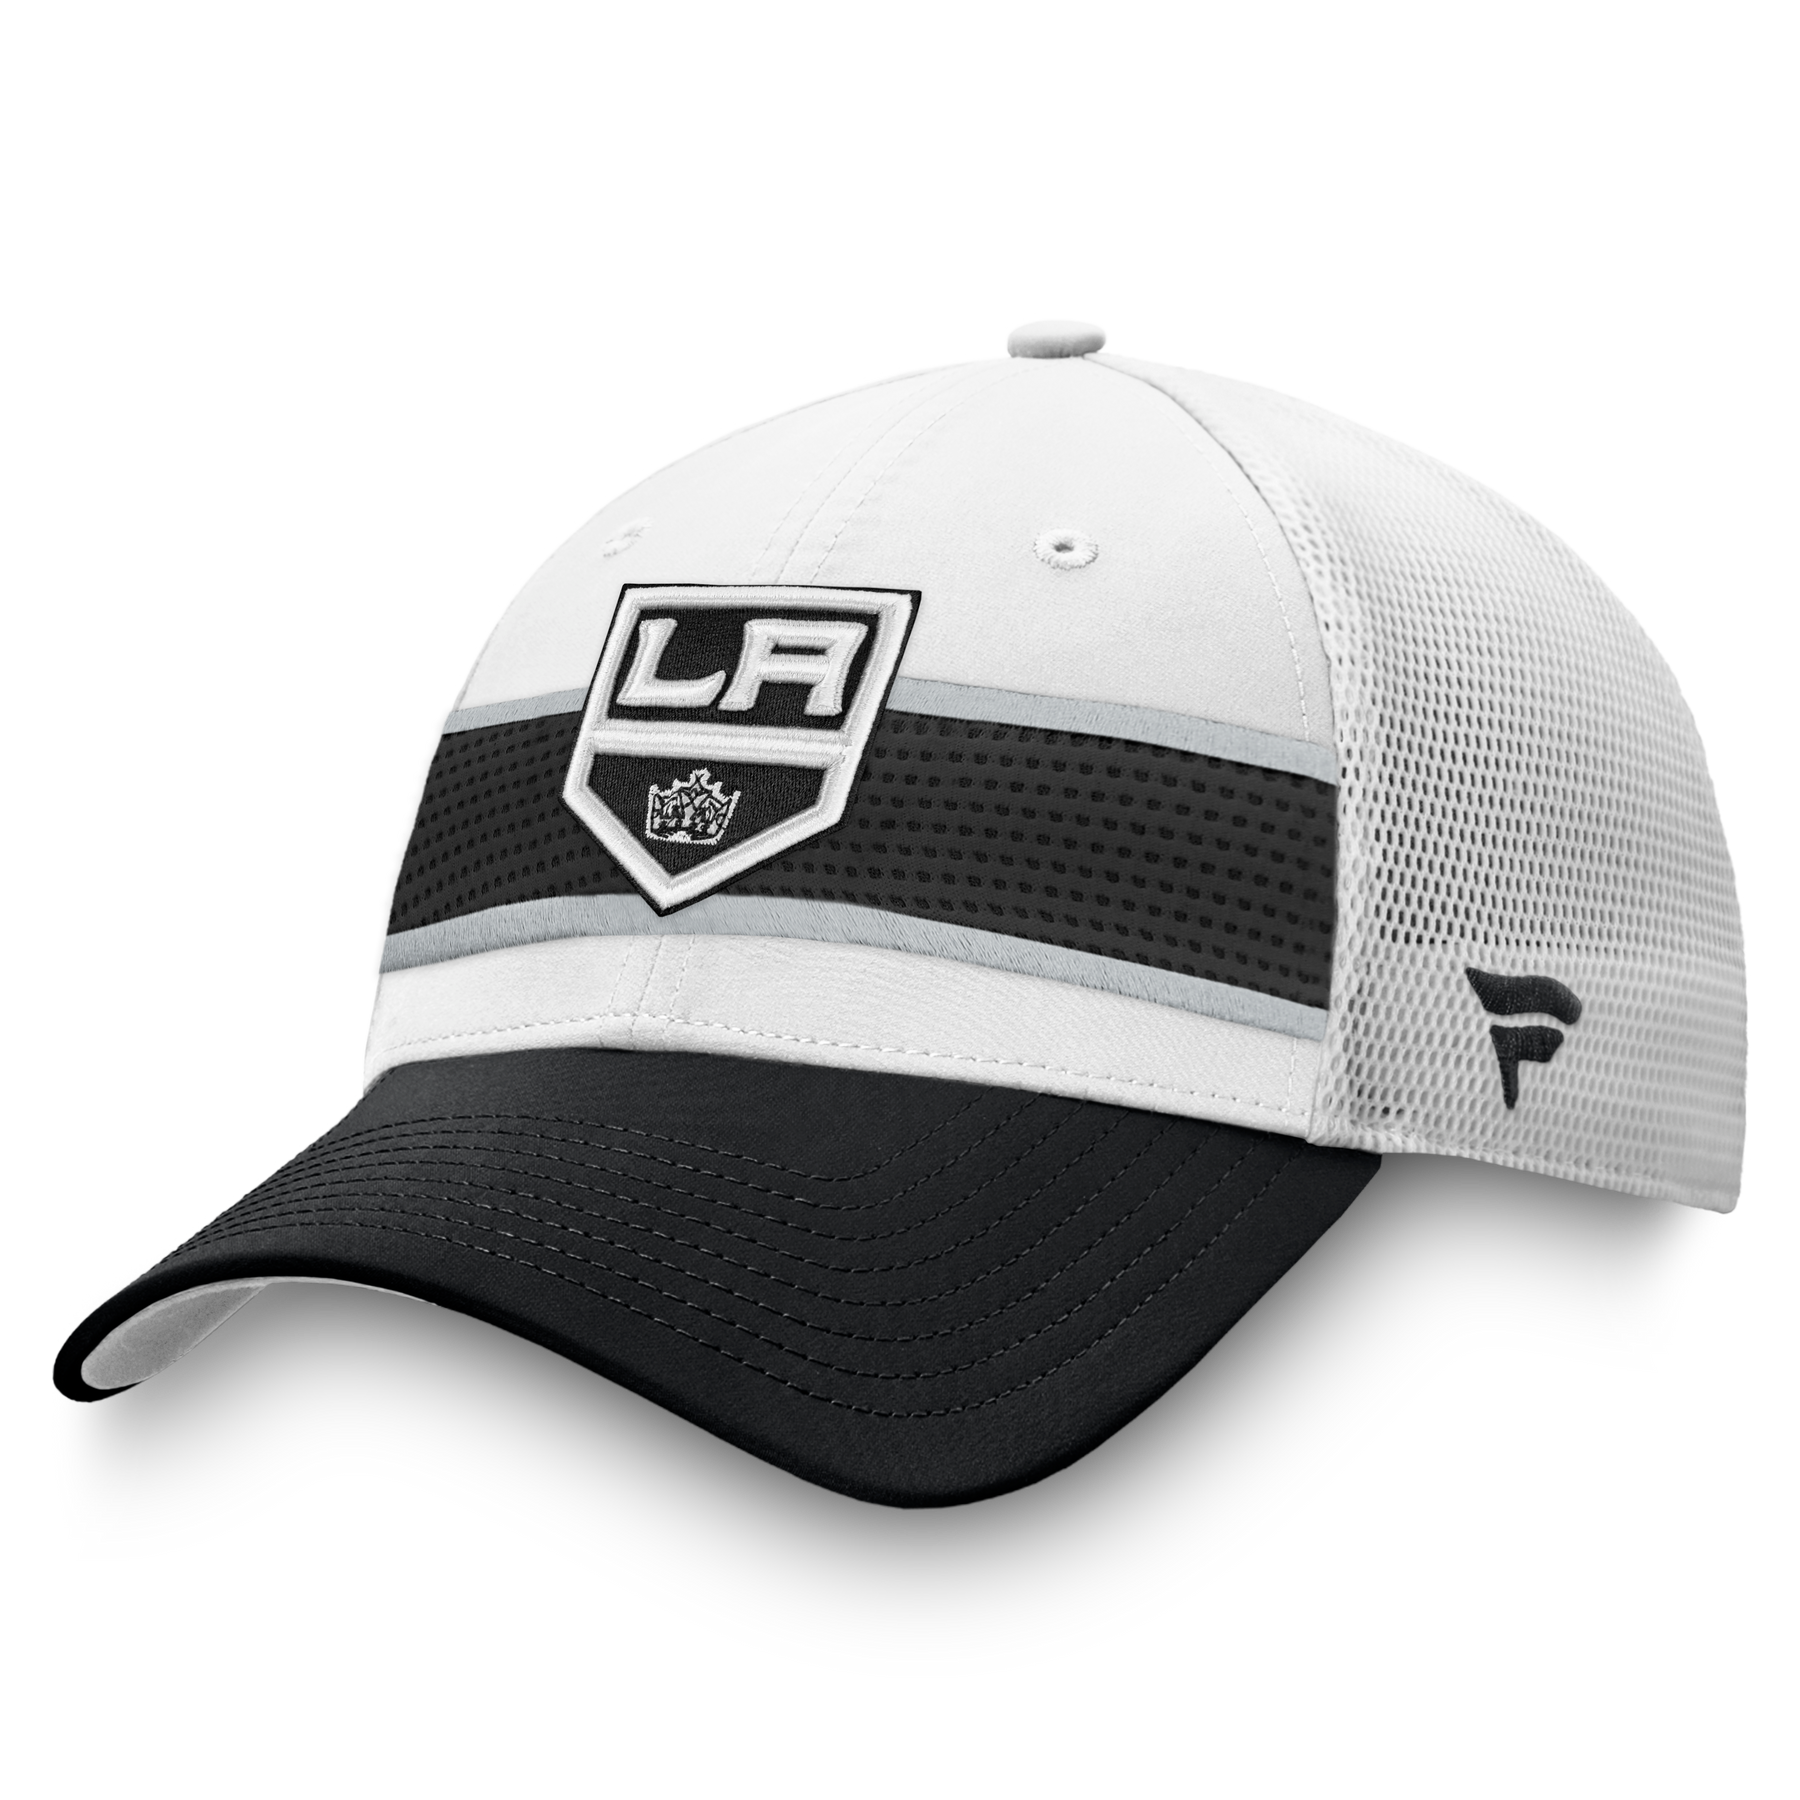 White New Adult Unisex Iconic Emblem LA Kings Snapback Hat (C1178)